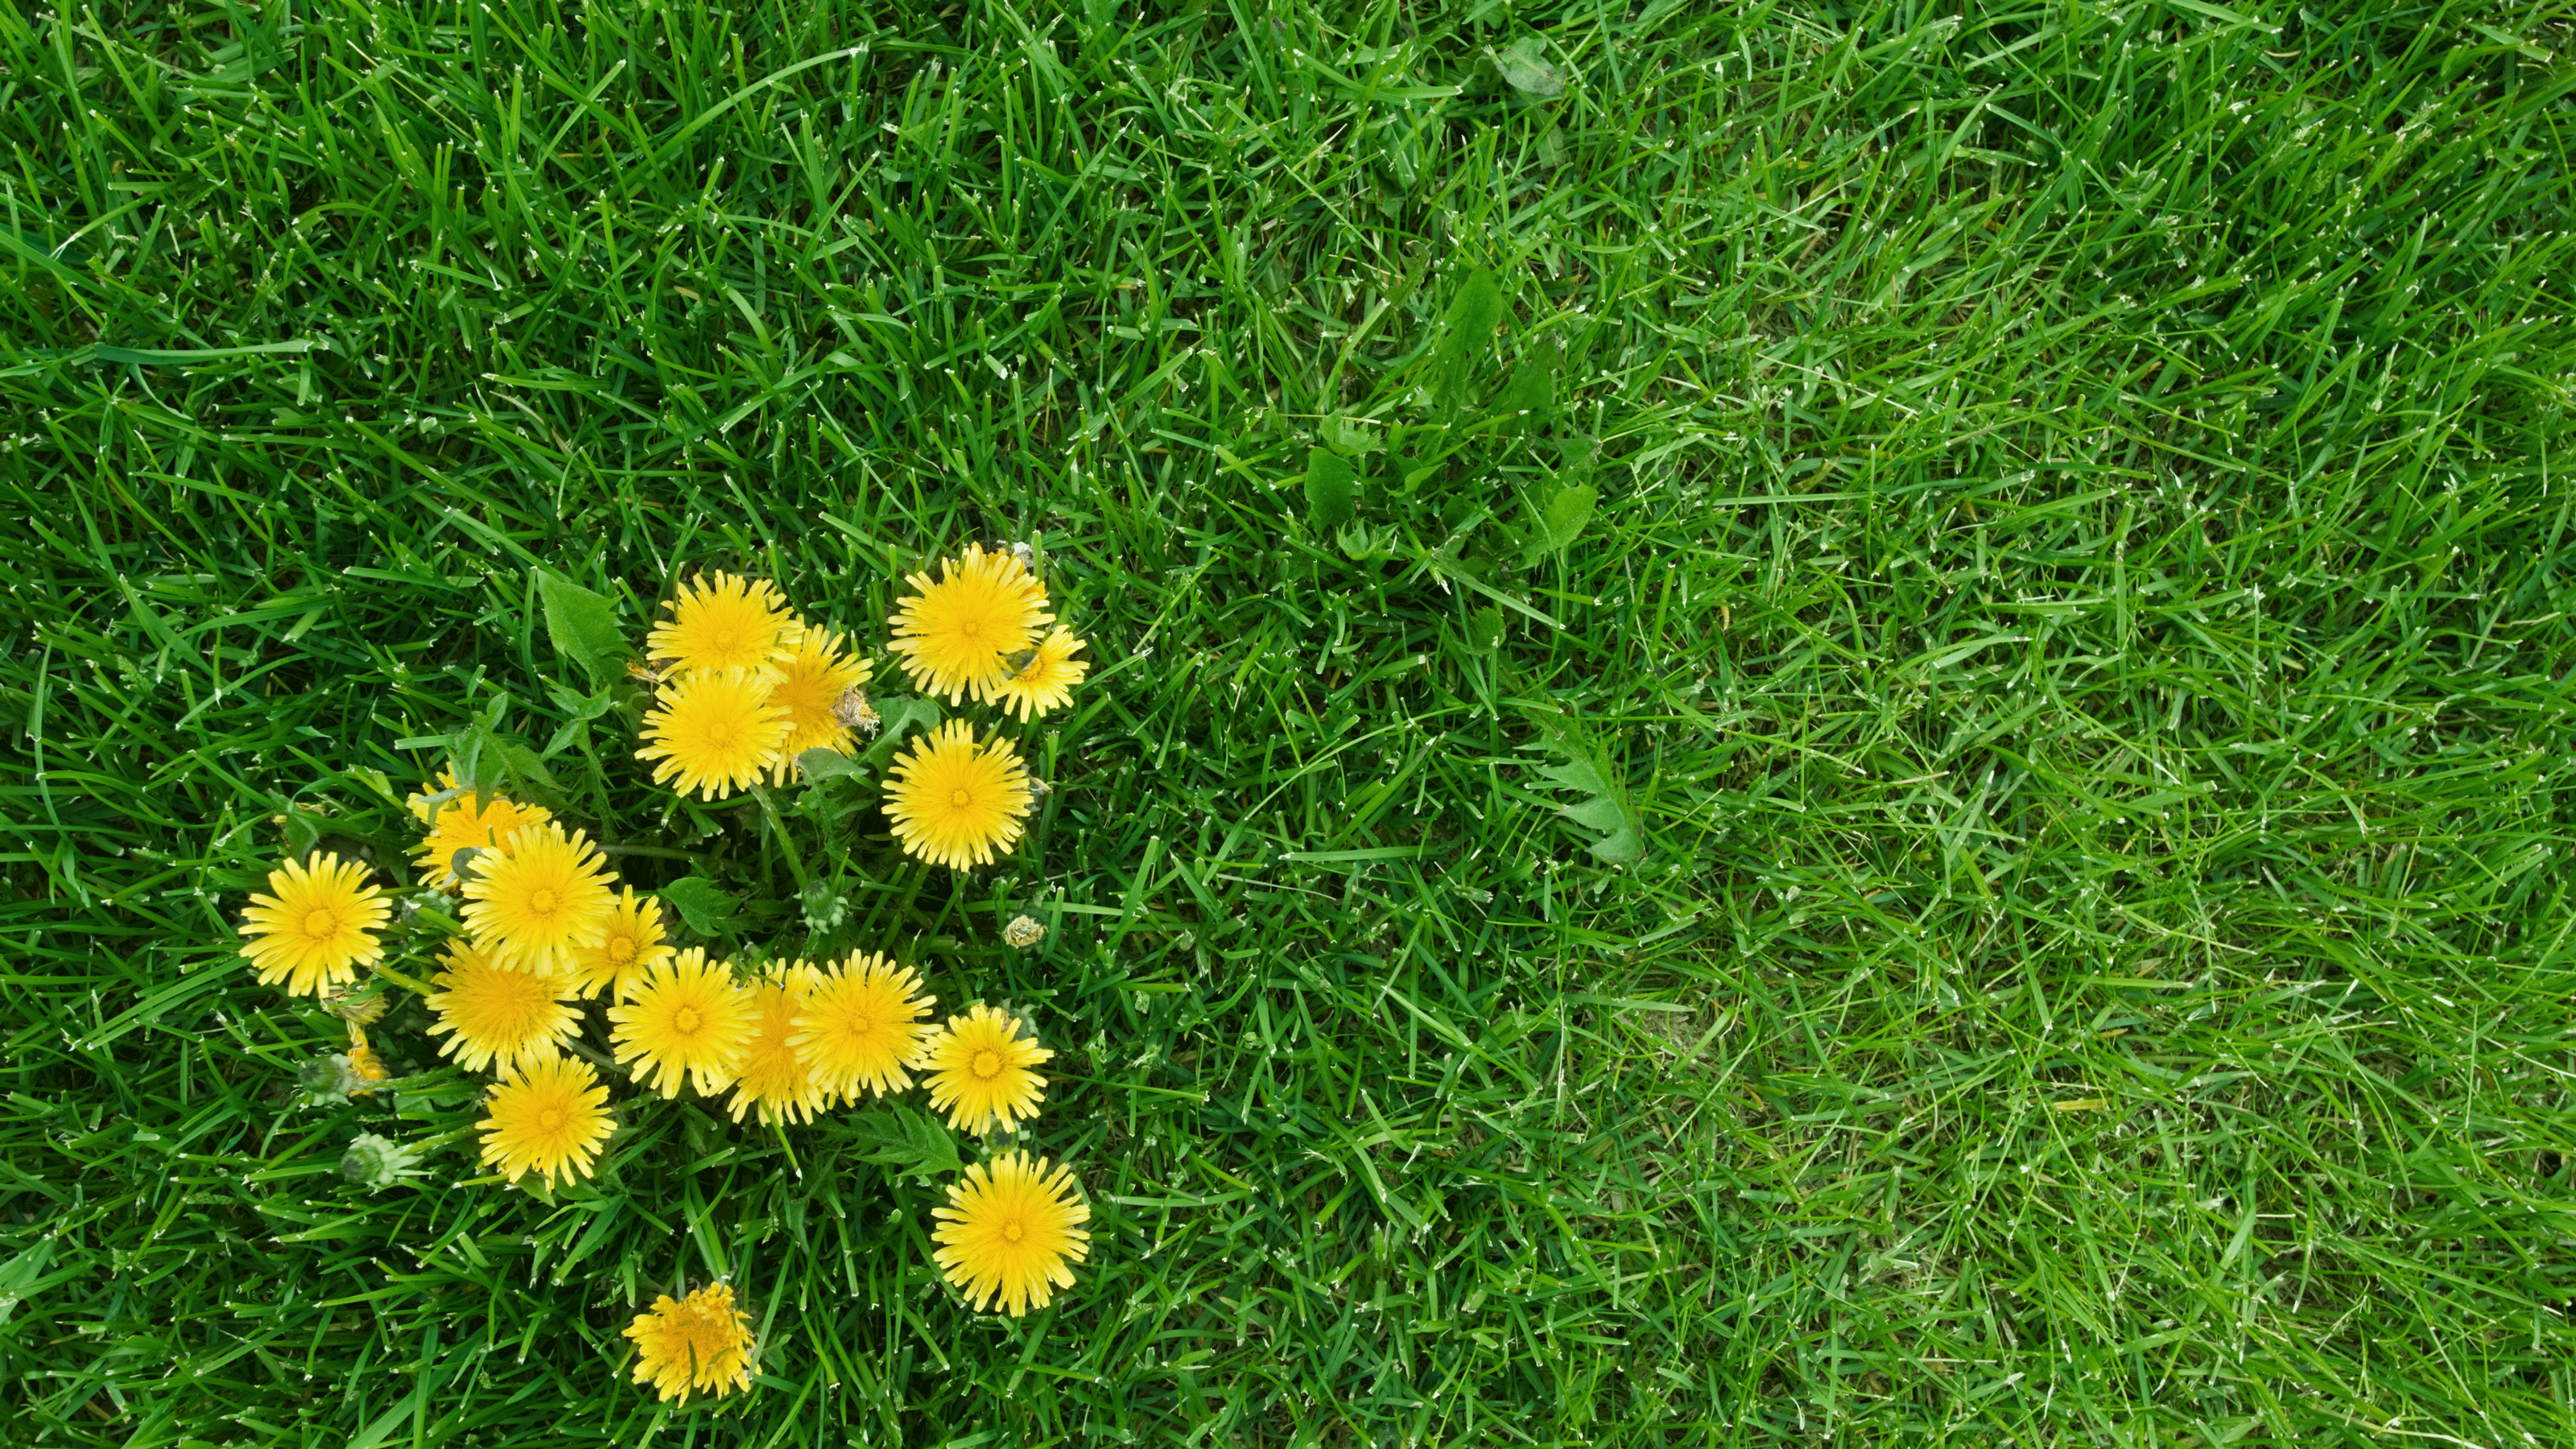 dandelion flower in a lawn